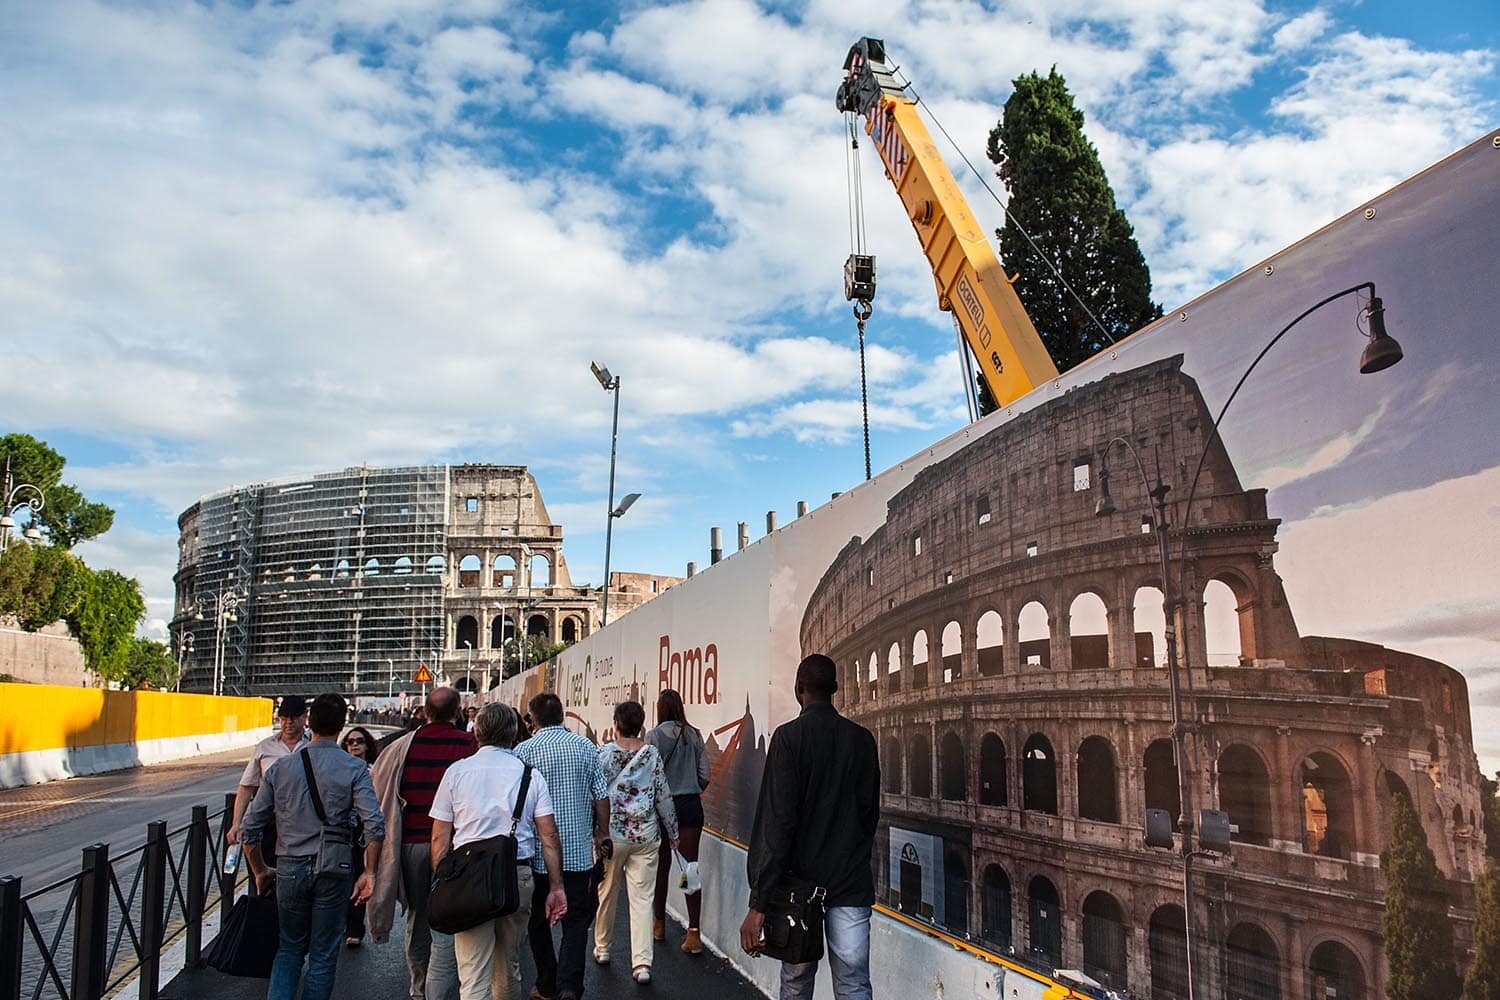 Empiezan los trabajos de restauración del Coliseo de Roma financiados por el dueño de Tod's